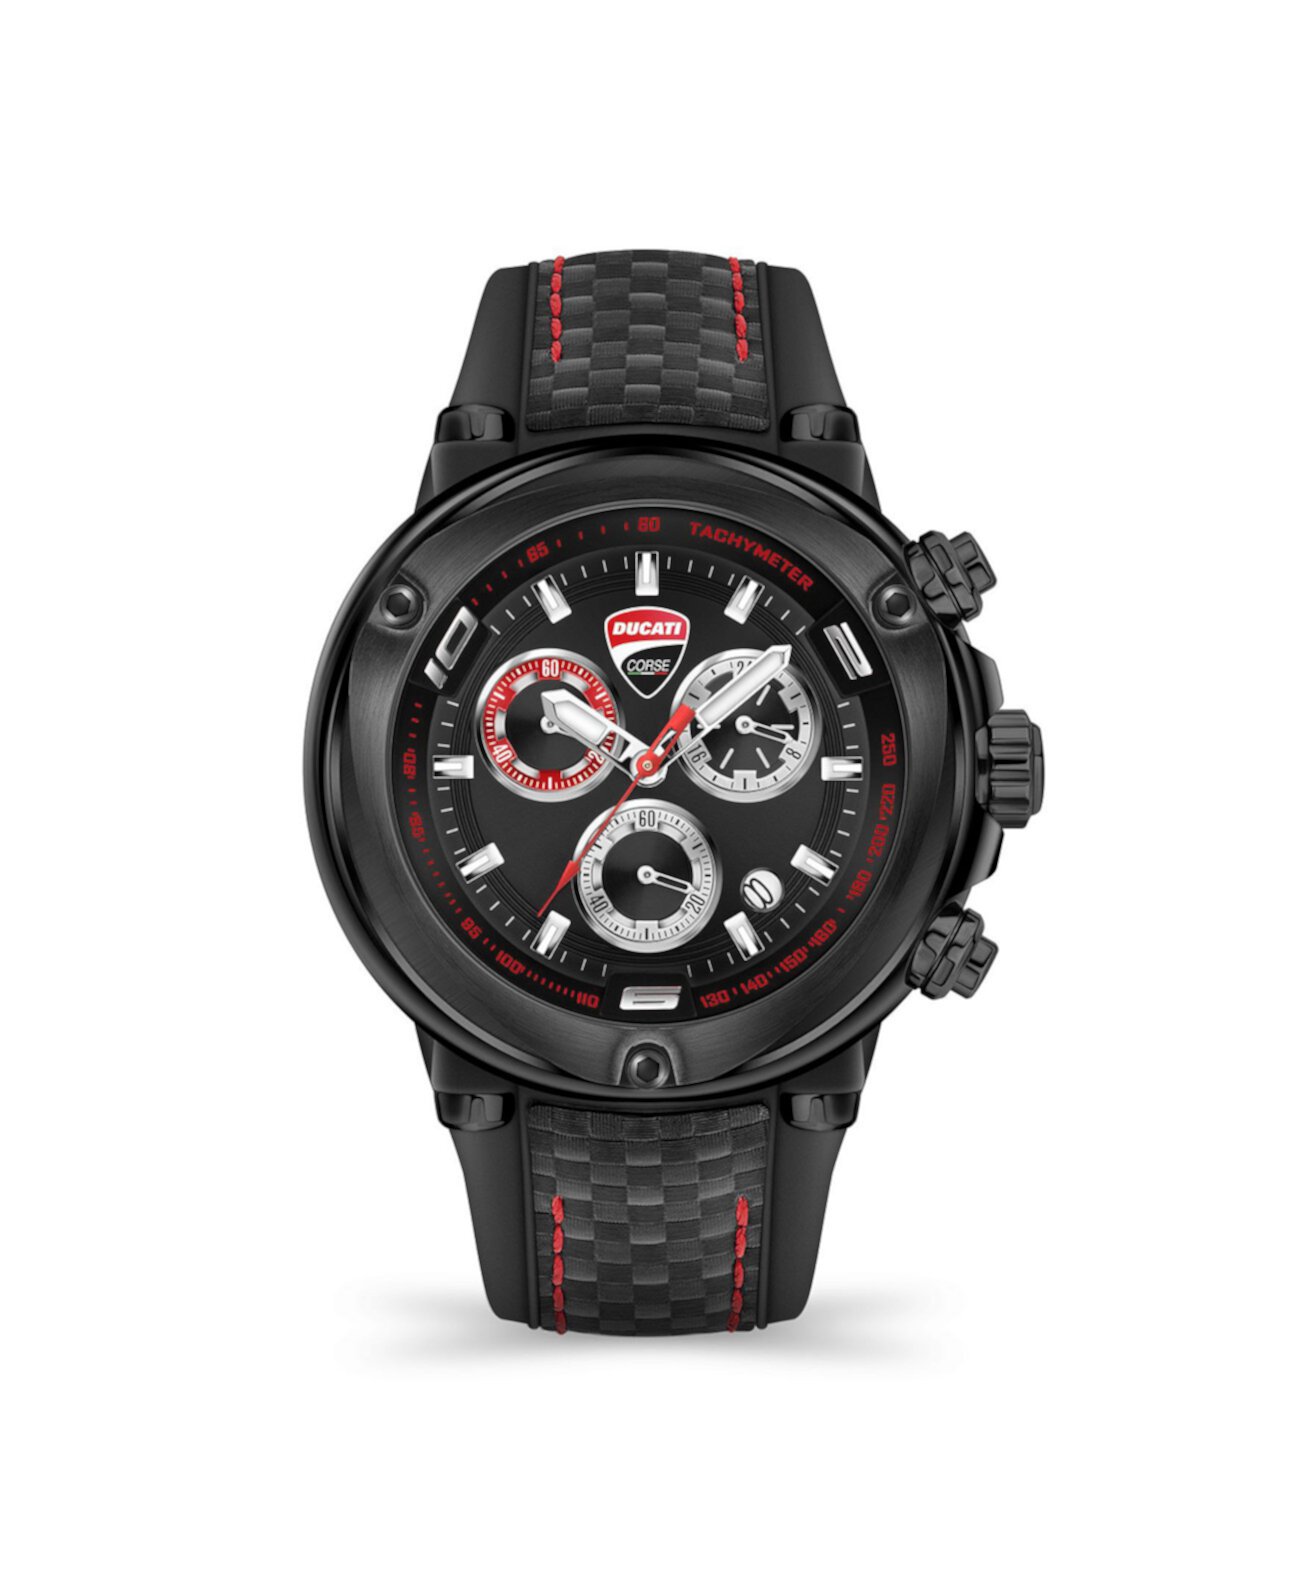 Мужские часы Partenza Chronograph с черным силиконовым ремешком 49 мм Ducati Corse